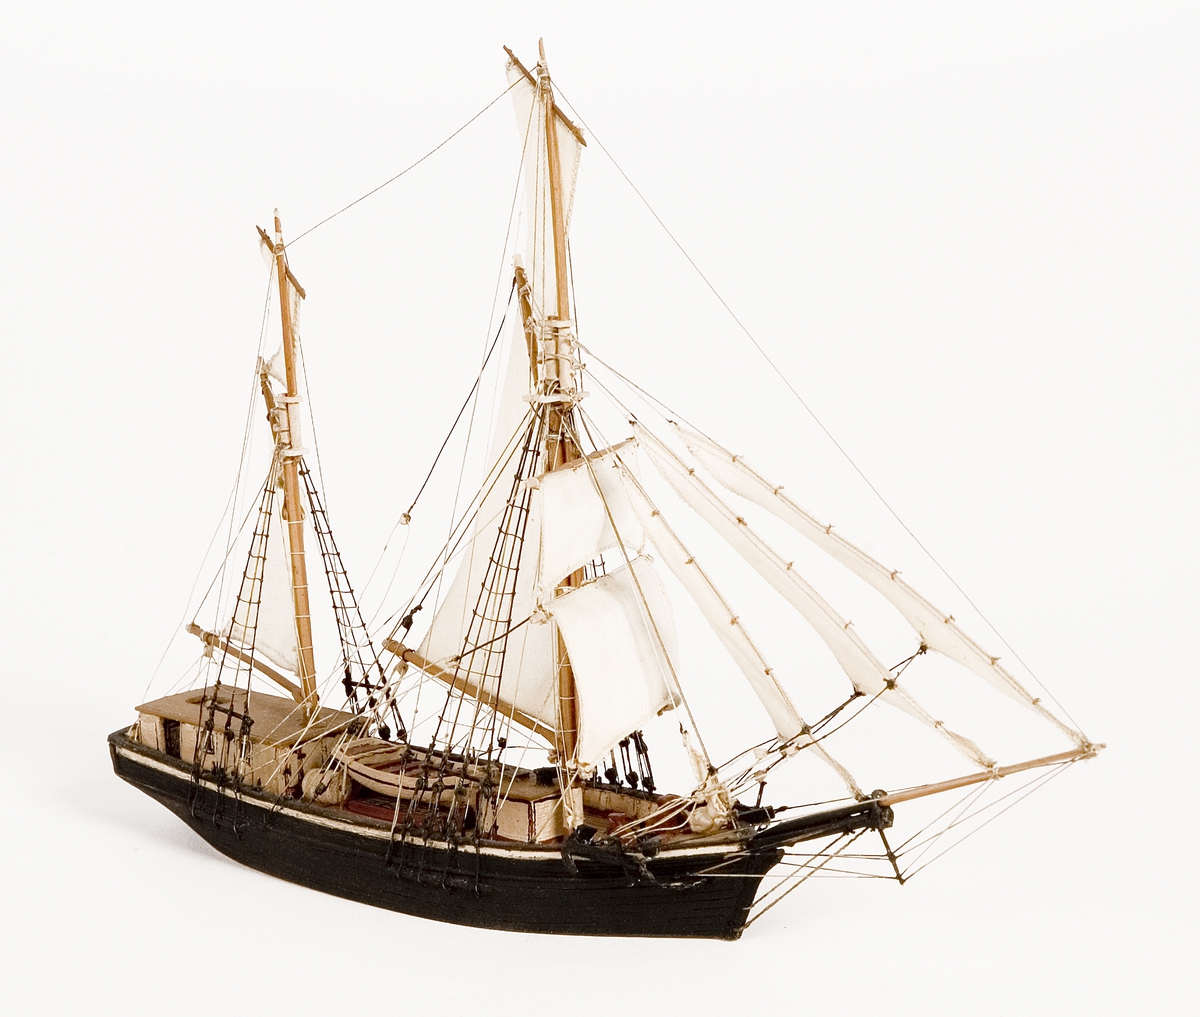 Modell av galeas i block med segel av bomull. Kabyss vitmålad, storbåt midskepps. Kajuta med brunt tak. Svartmålat skrov.Föremålets form: Vattenlinjemodell